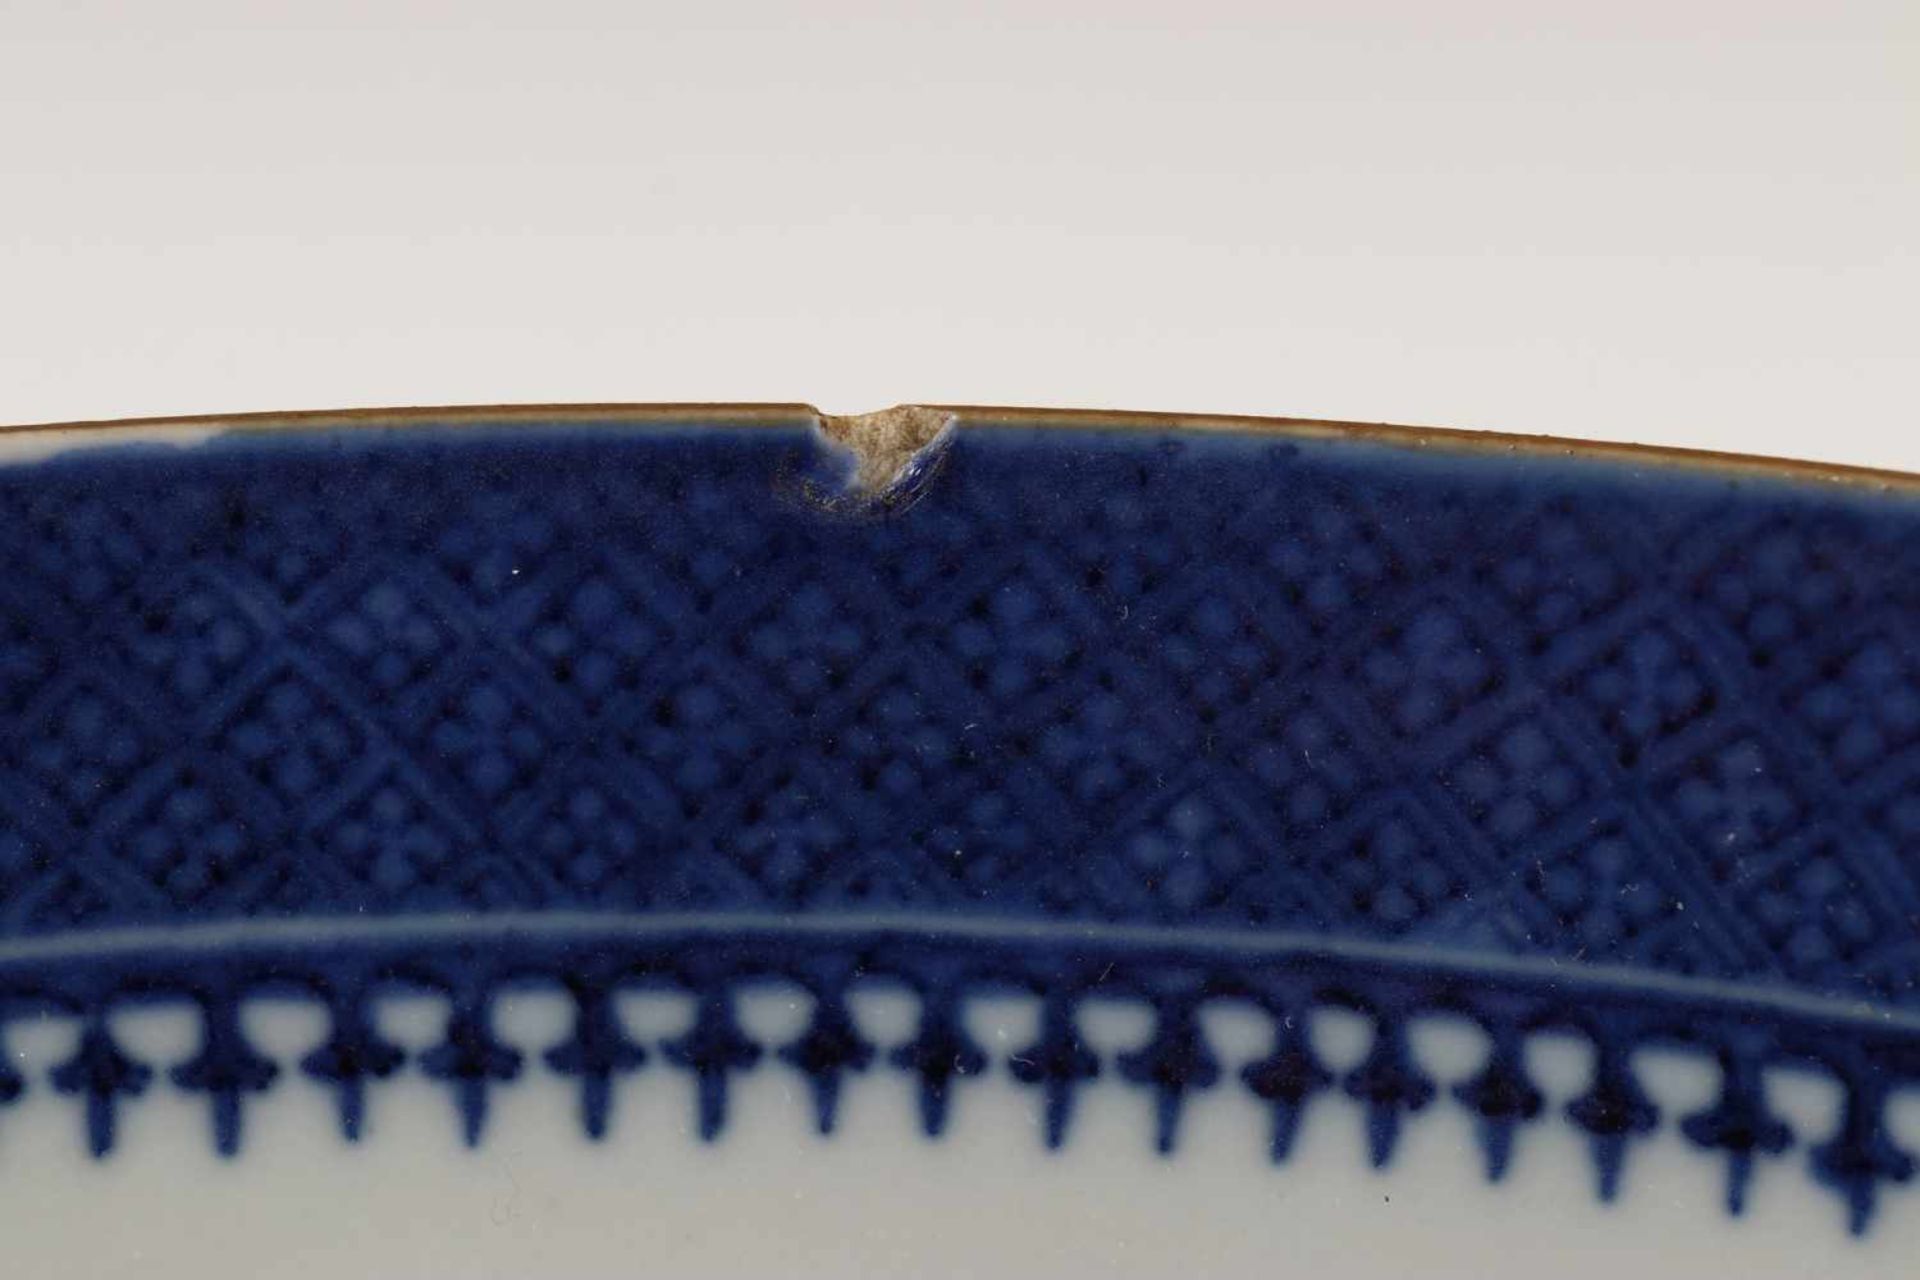 China, paar blauw-witte porseleinen kommen, Jiaqing, ca. 1800,gedecoreerd met insecten en bloemen ( - Bild 5 aus 5